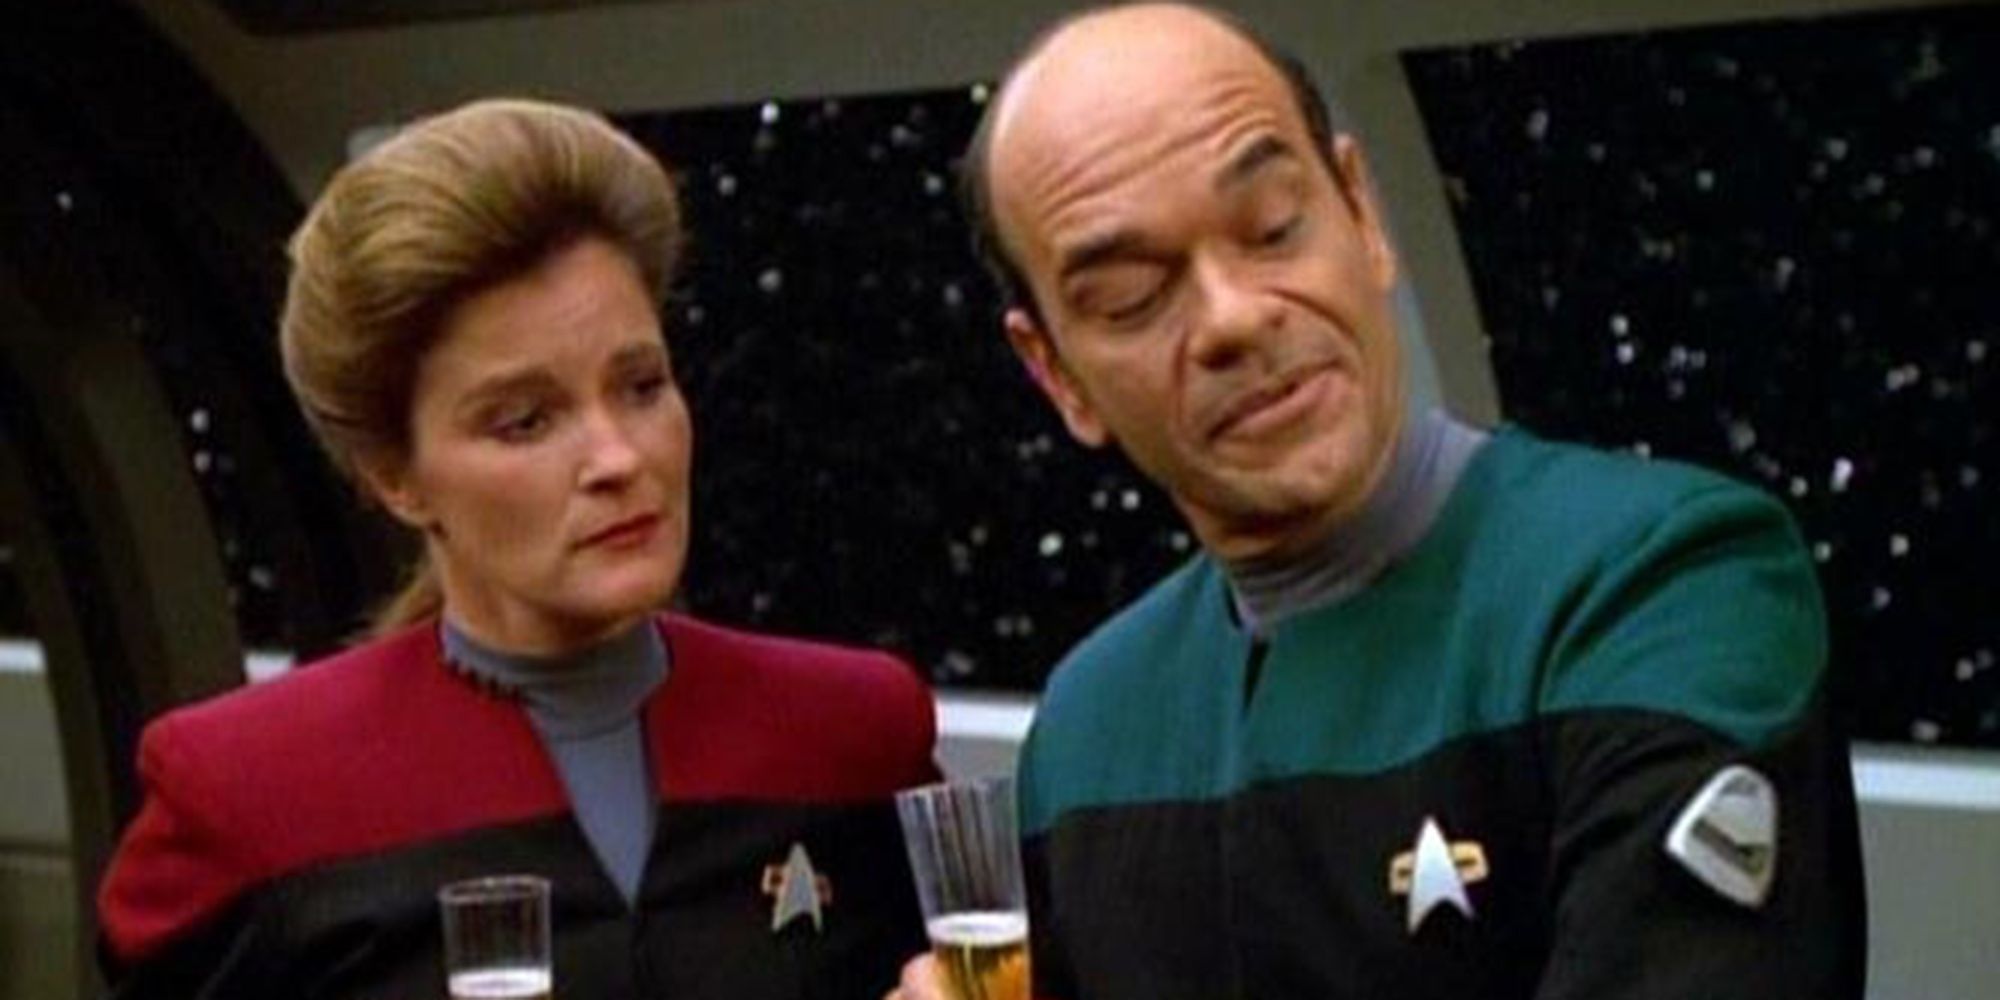 Capitão Janeway e o Doutor estão no refeitório com copos de champanhe admirando o emissor móvel do Doutor em Star Trek: Voyager epispode "Fim do futuro"